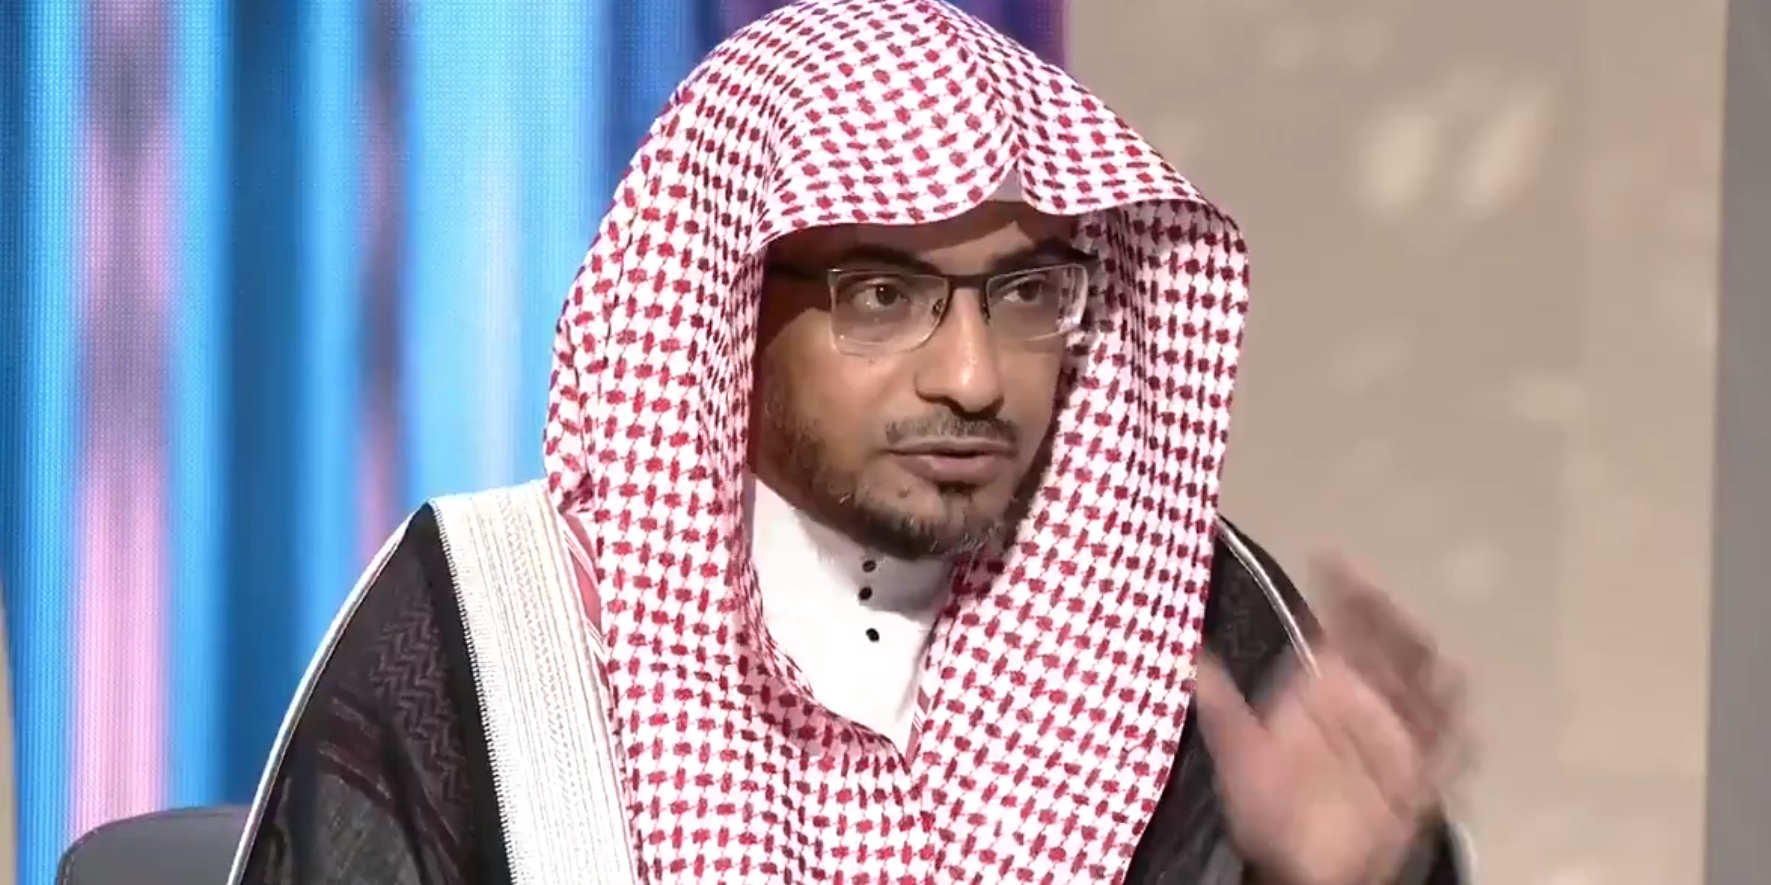 المغامسي عن صعود الأمير محمد بن سلمان على سطح الكعبة: لا مانع شرعي وإن صلى فوقها